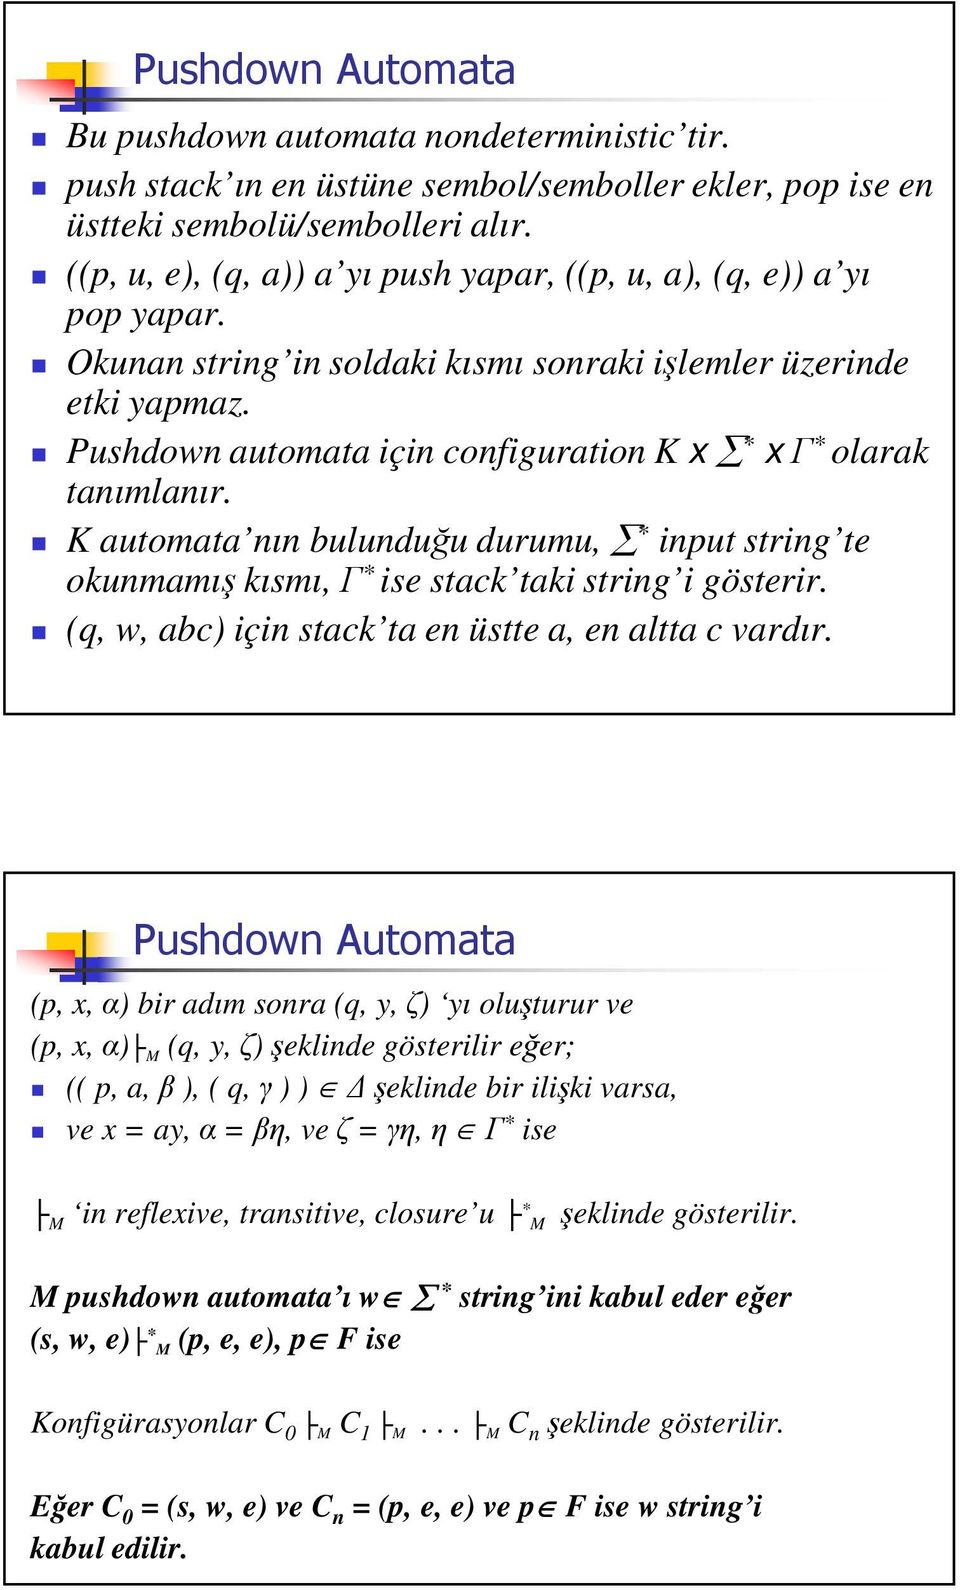 Pushdown automata için configuration K x * x * olarak tanımlanır. K automata nın bulunduu durumu, * input string te okunmamı kısmı, * ise stack taki string i gösterir.